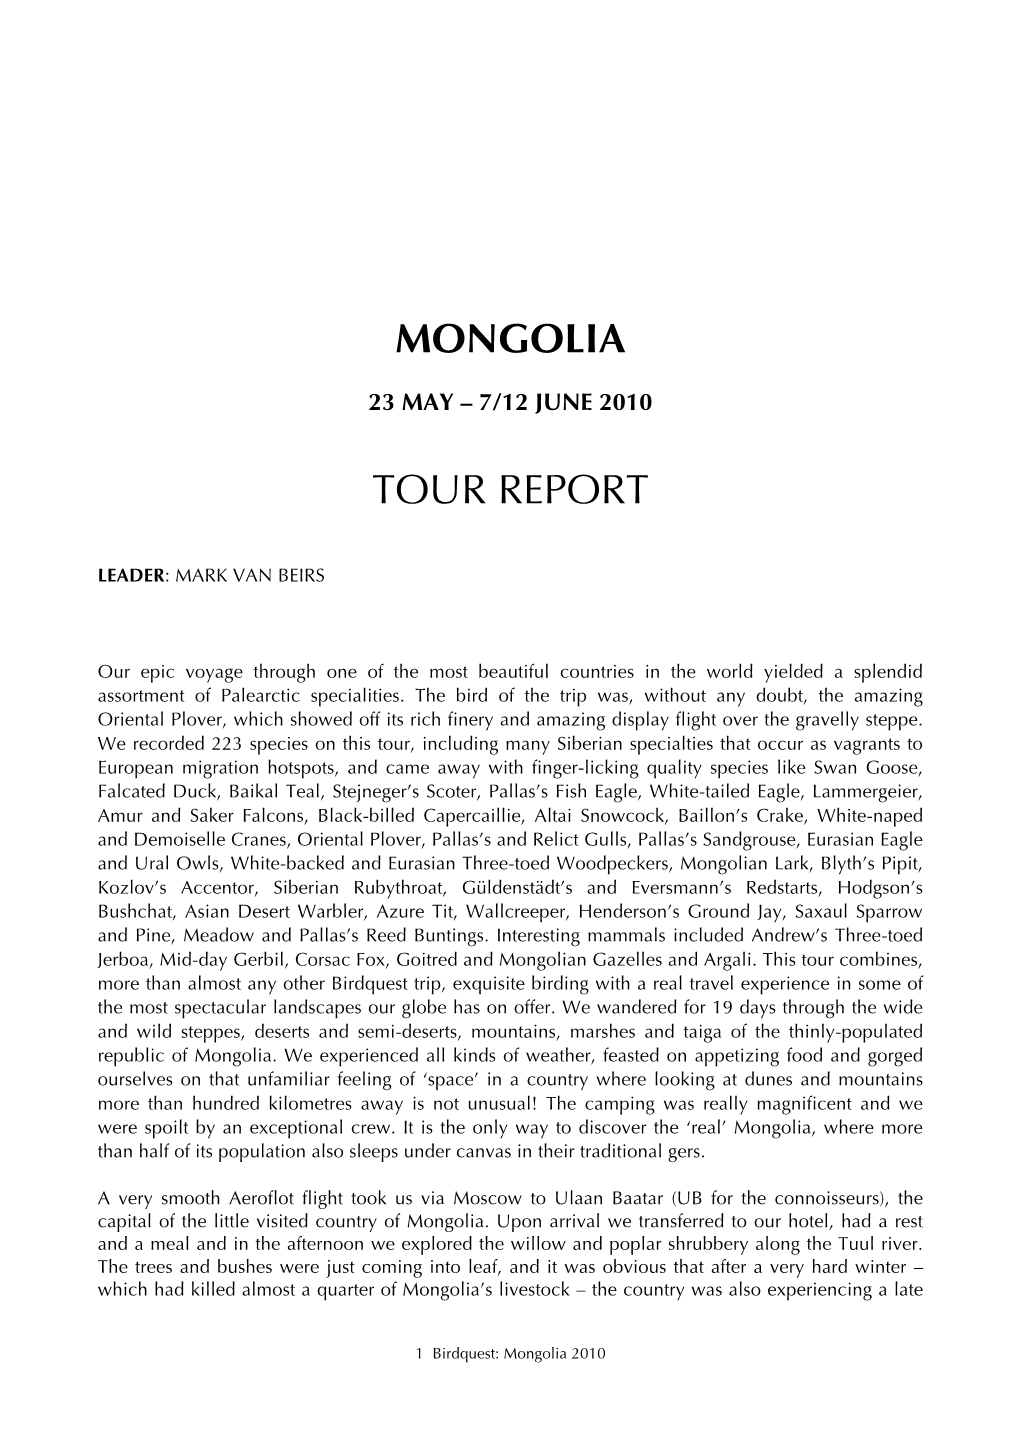 MONGOLIA REP 10 Copy